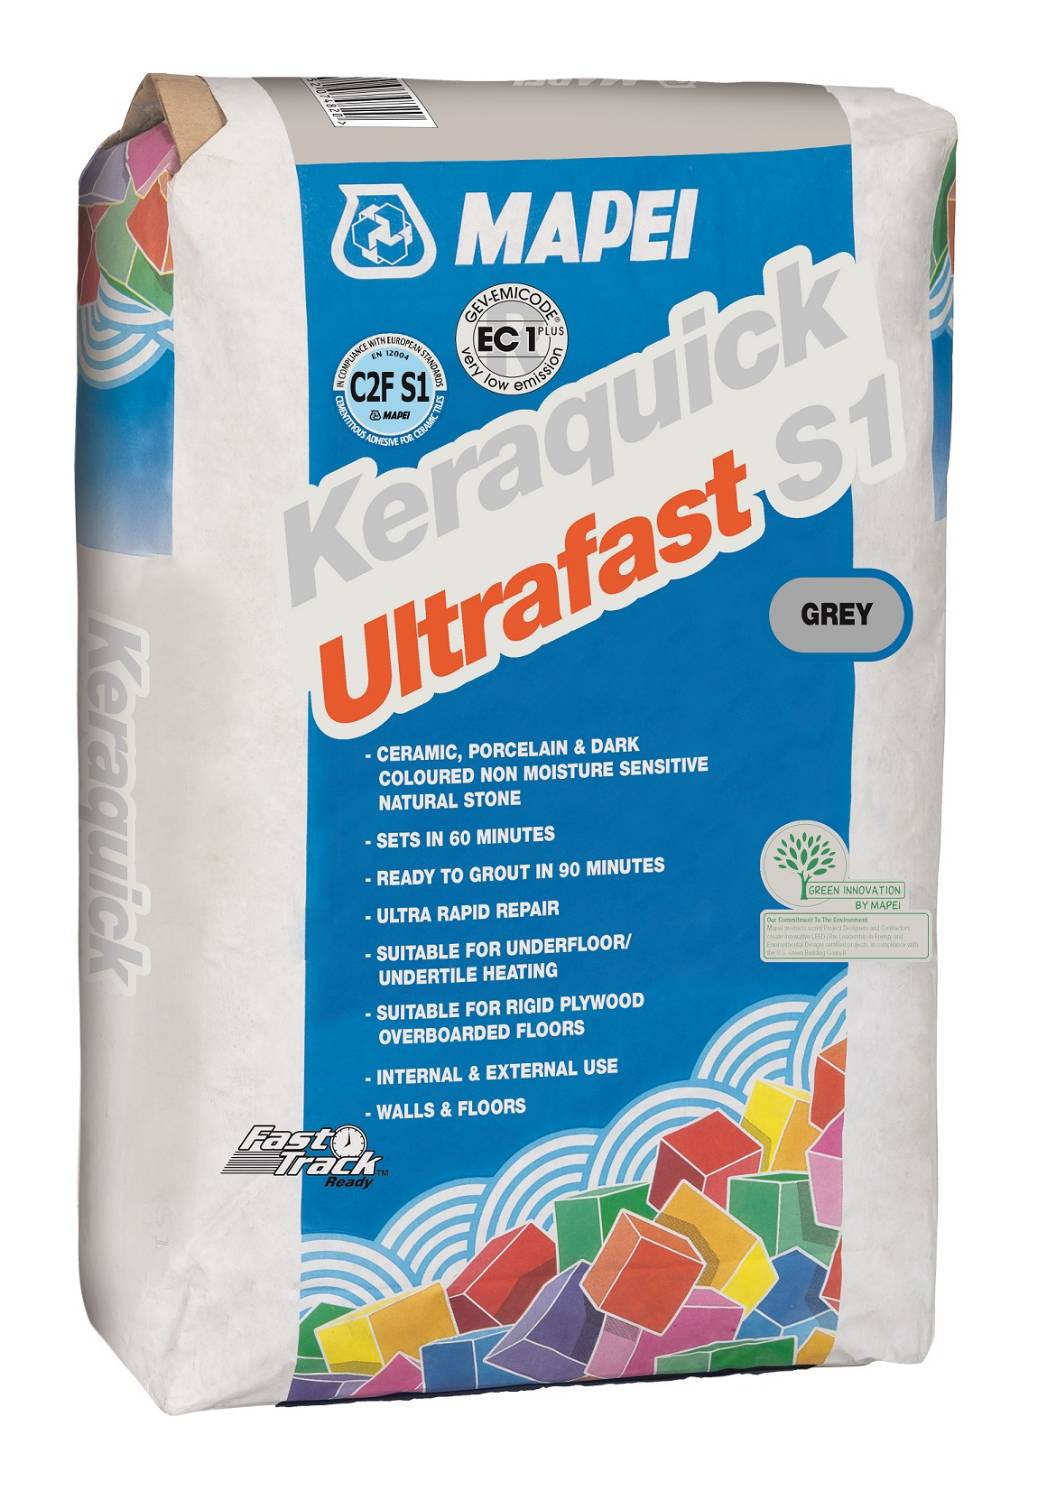 Keraquick Ultrafast S1